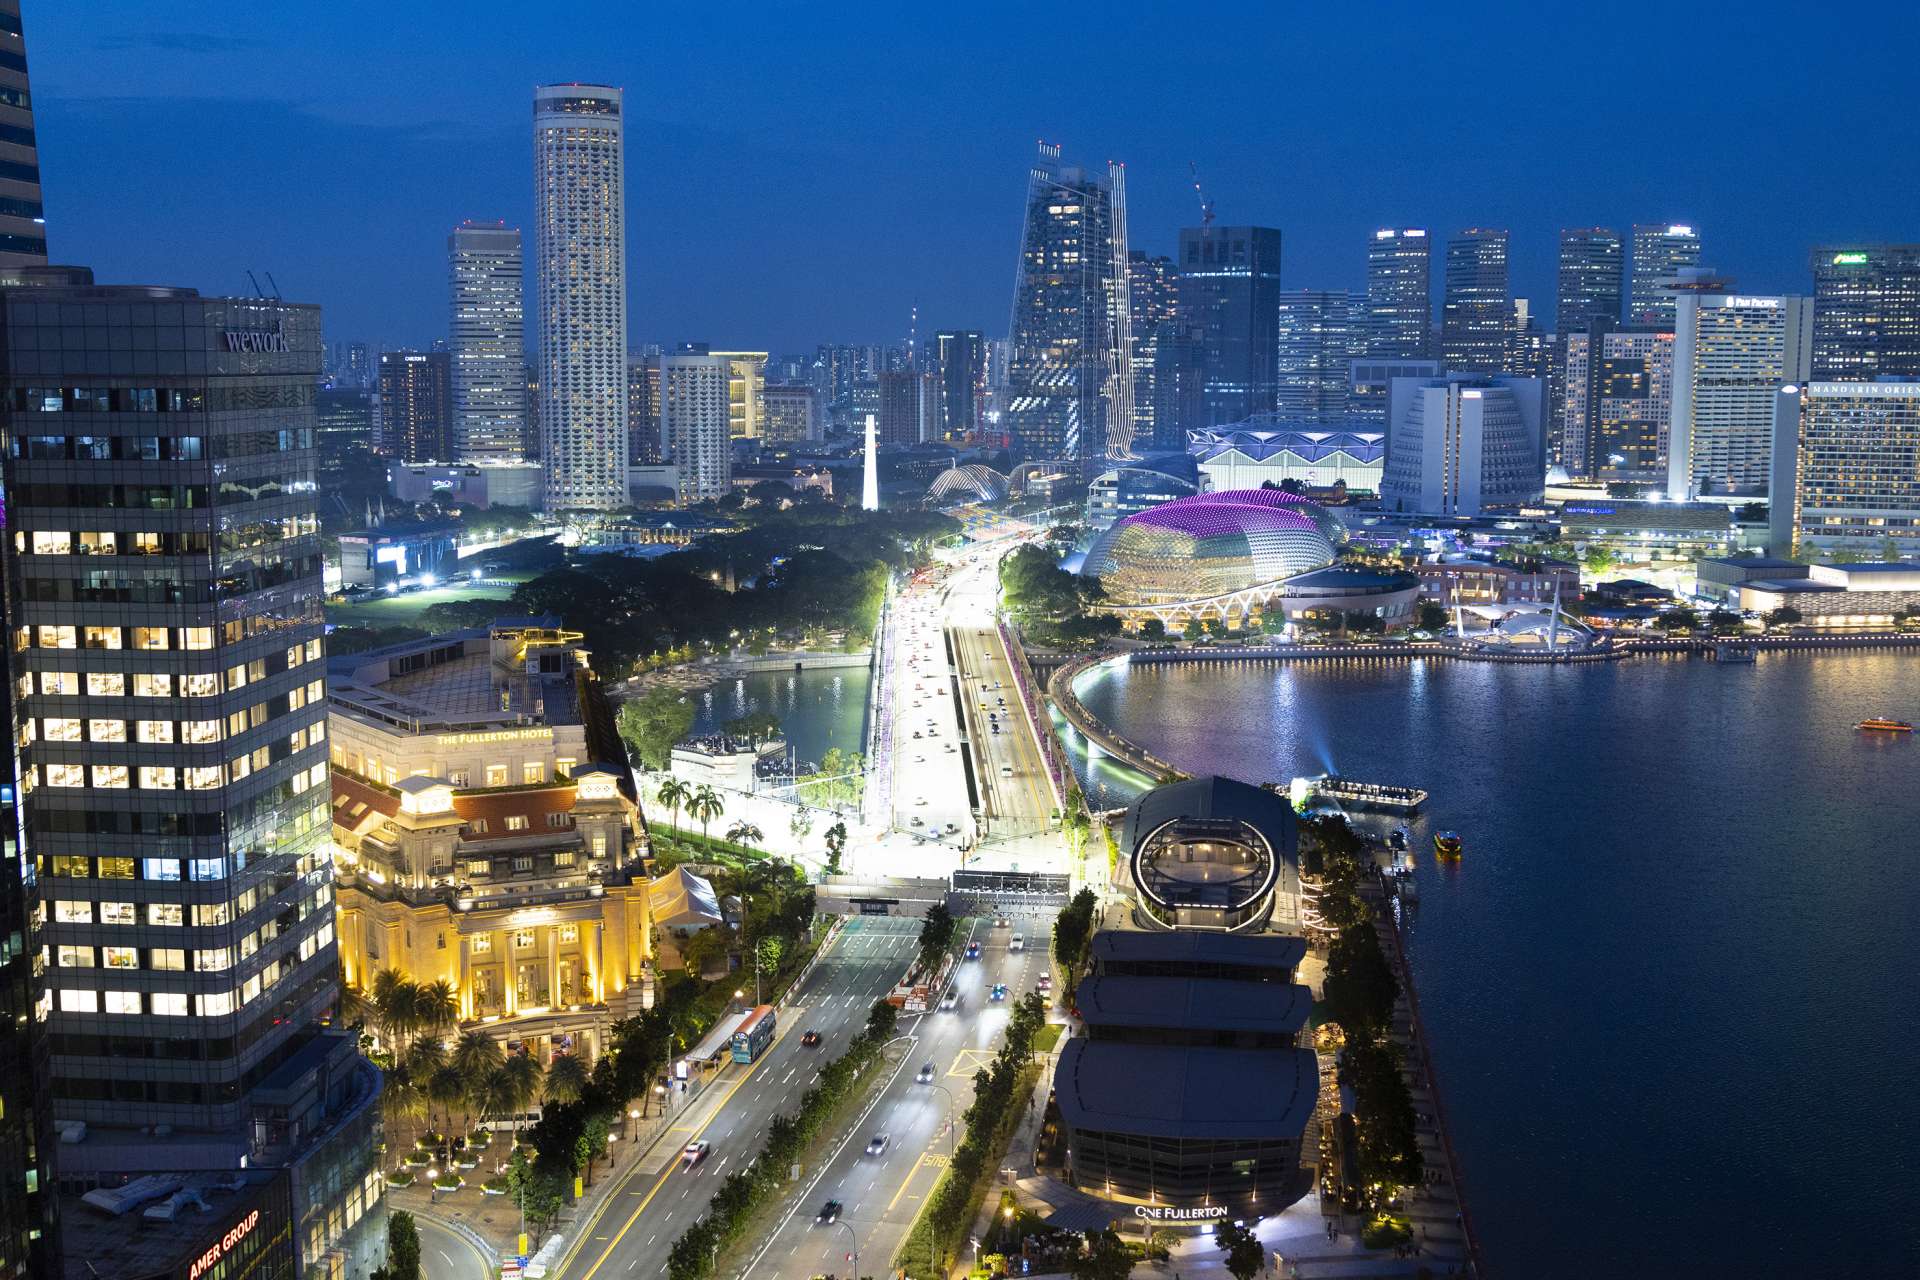 マリーナ北側の眺望。中央左の歴史建築はフラトン・ホテル・シンガポール